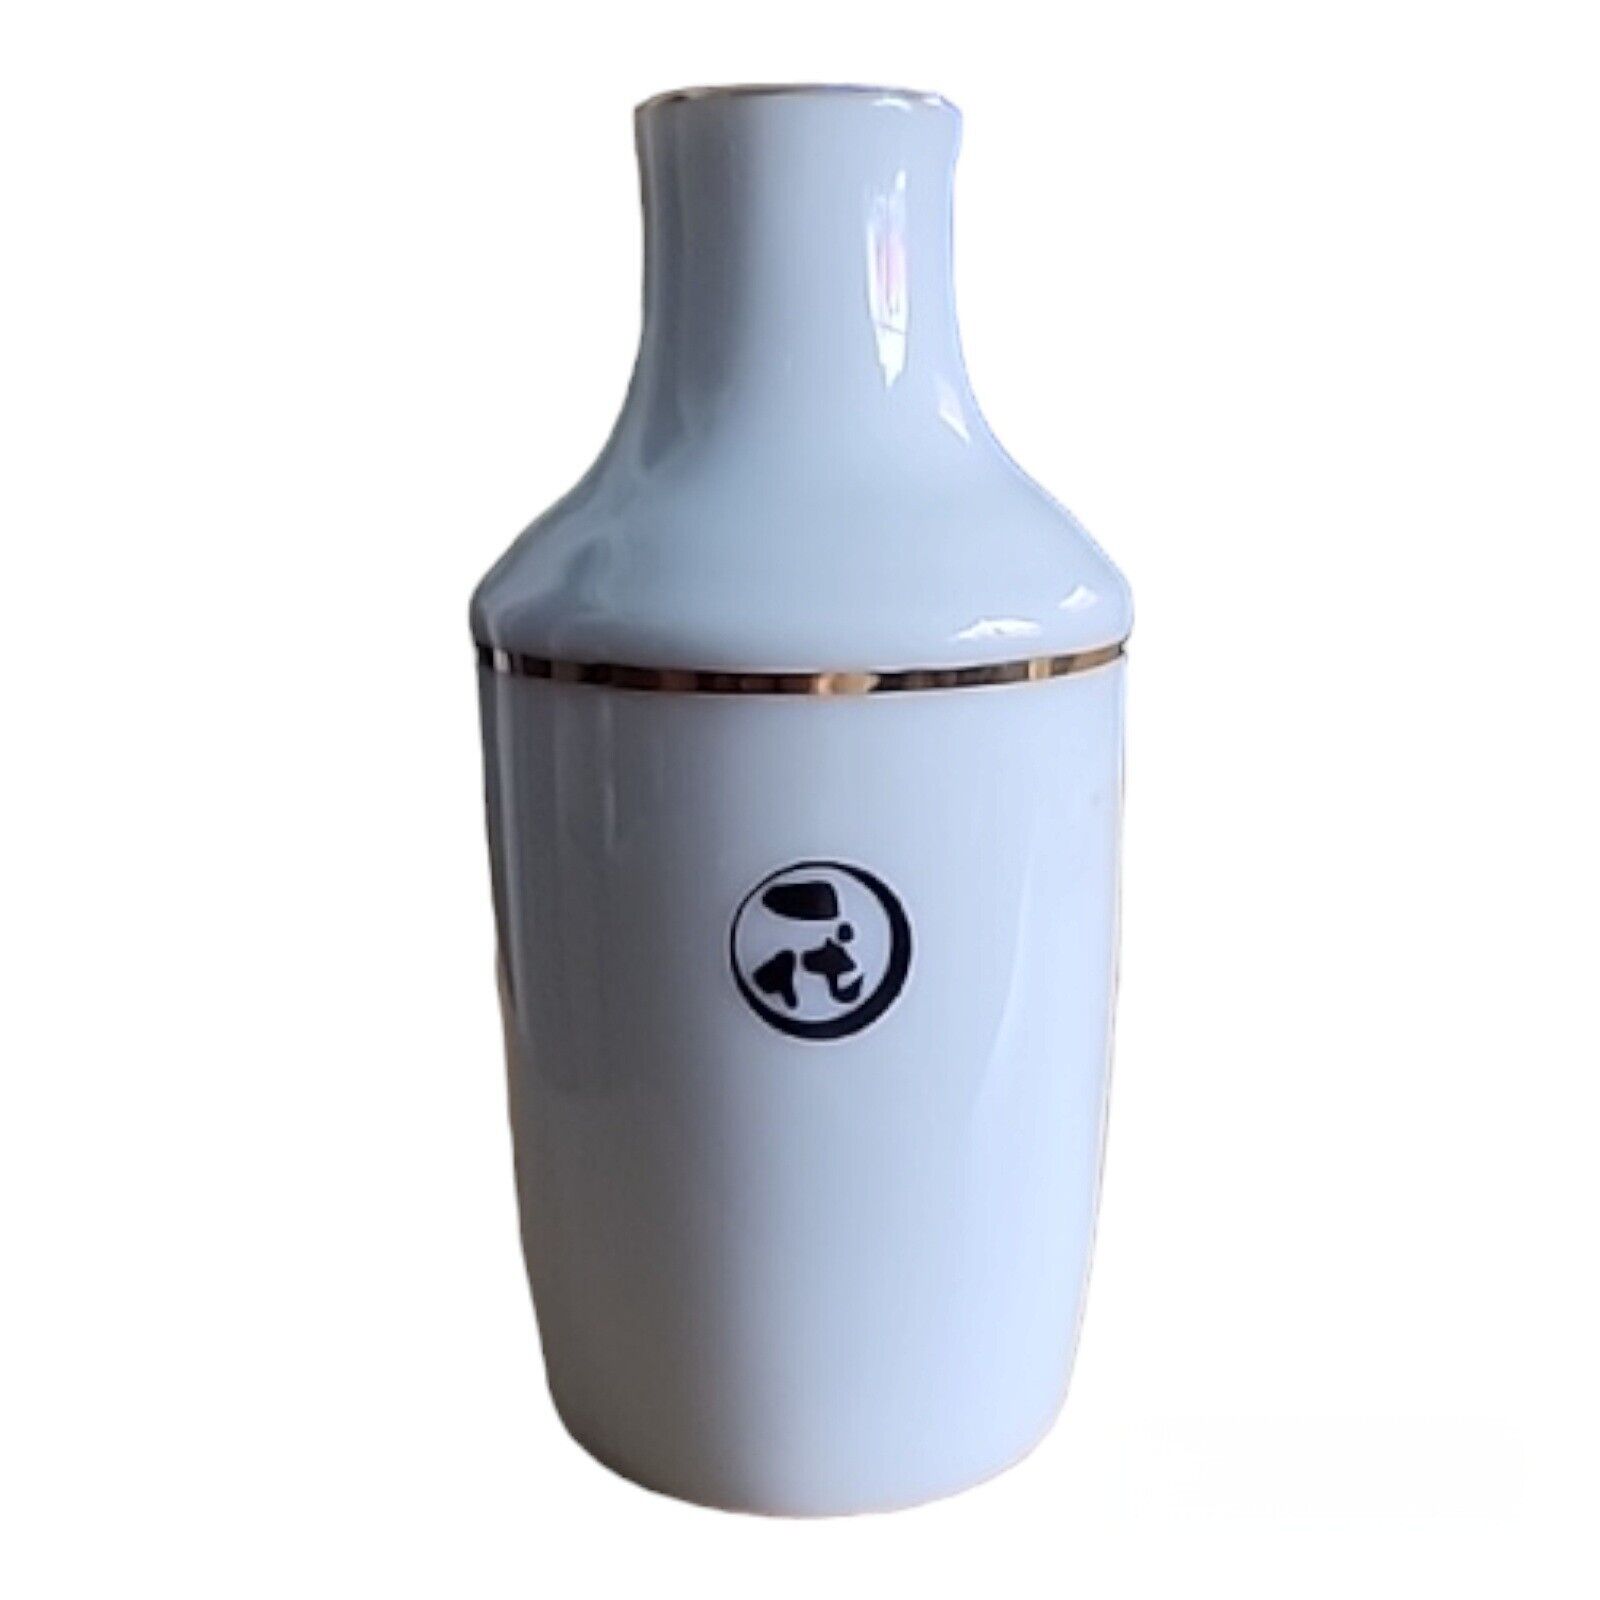 Vintage Vase Sake Pitcher Porcelain Japan White Gold